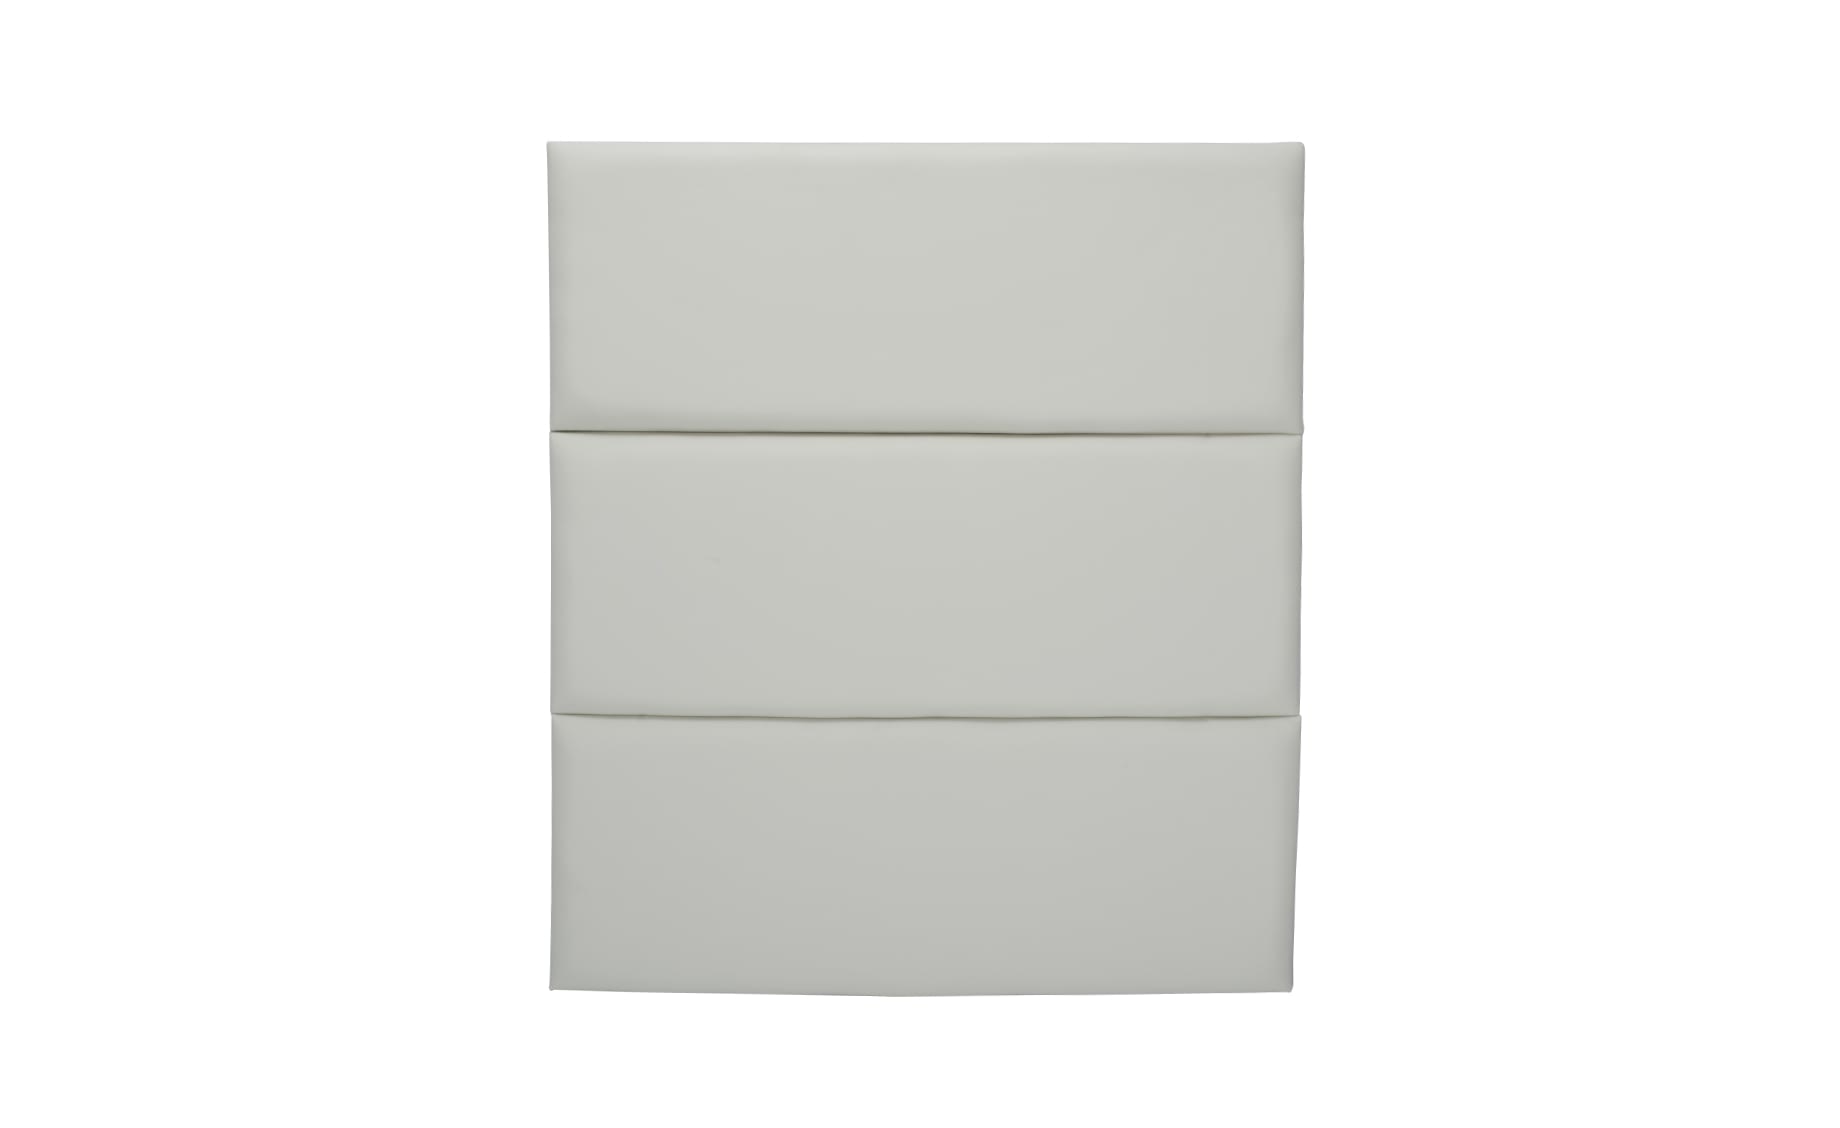 Modal zidni panel 90x80x5cm bijeli